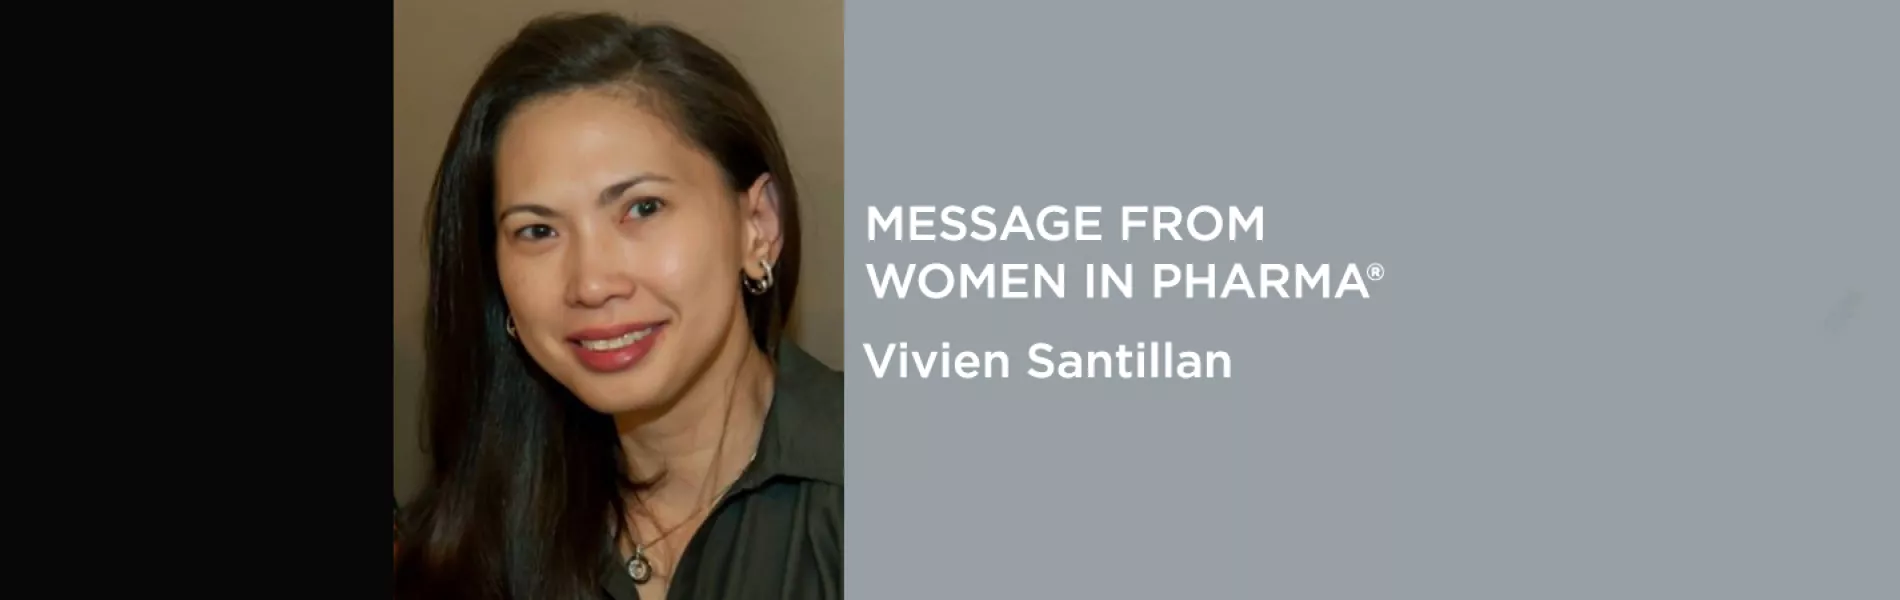 Women in Pharma® Editorial: Vivien E. Santillan